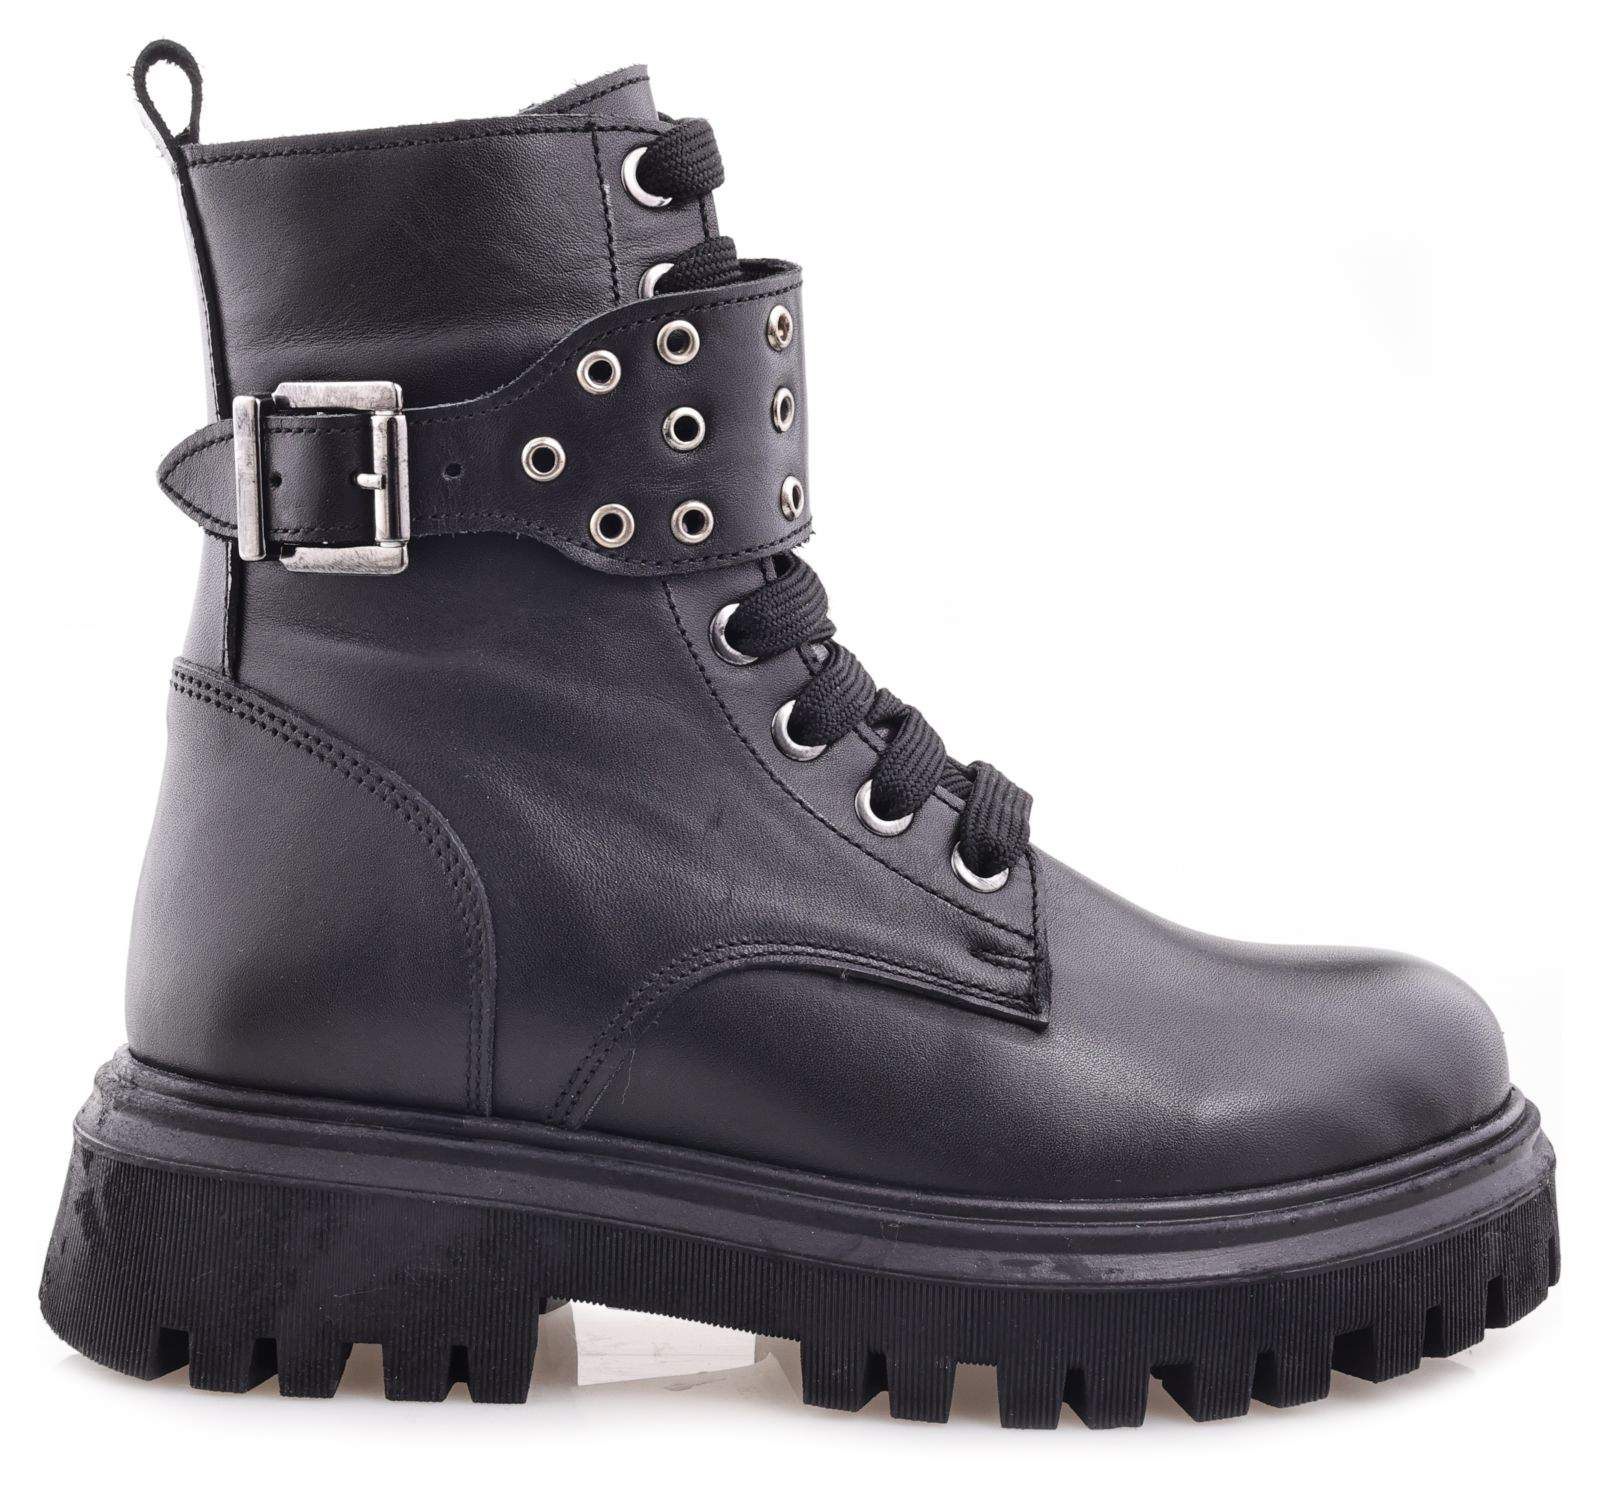 Ботинки Minimen для девочек, чёрные, размер 33, 2666-44-23B-02 2666 боланьо р